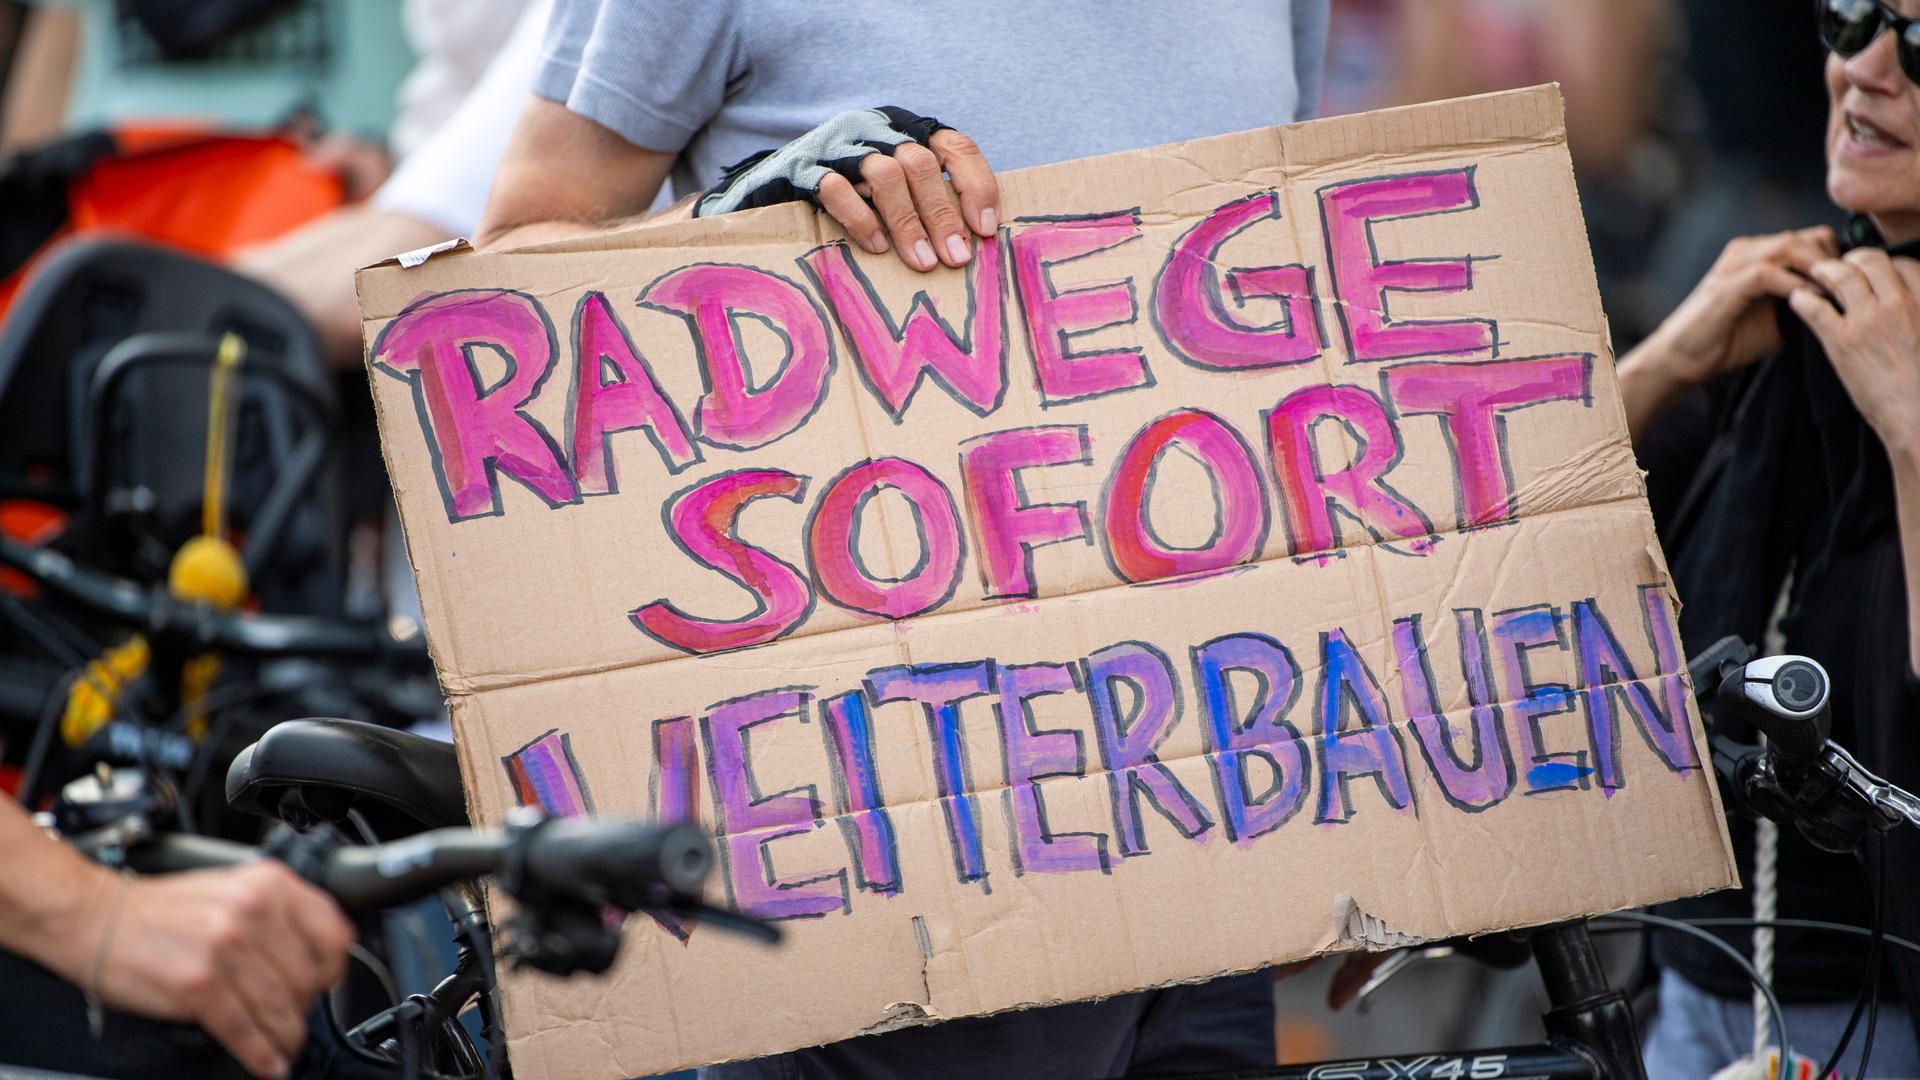 Ein Teilnehmer einer Demonstration gegen Einschränkungen beim Radwegeausbau in Berlin hält bei einer Abschlusskundgebung vor dem Roten Rathaus ein Plakat mit der Aufschrift "Radwege sofort weiterbauen".